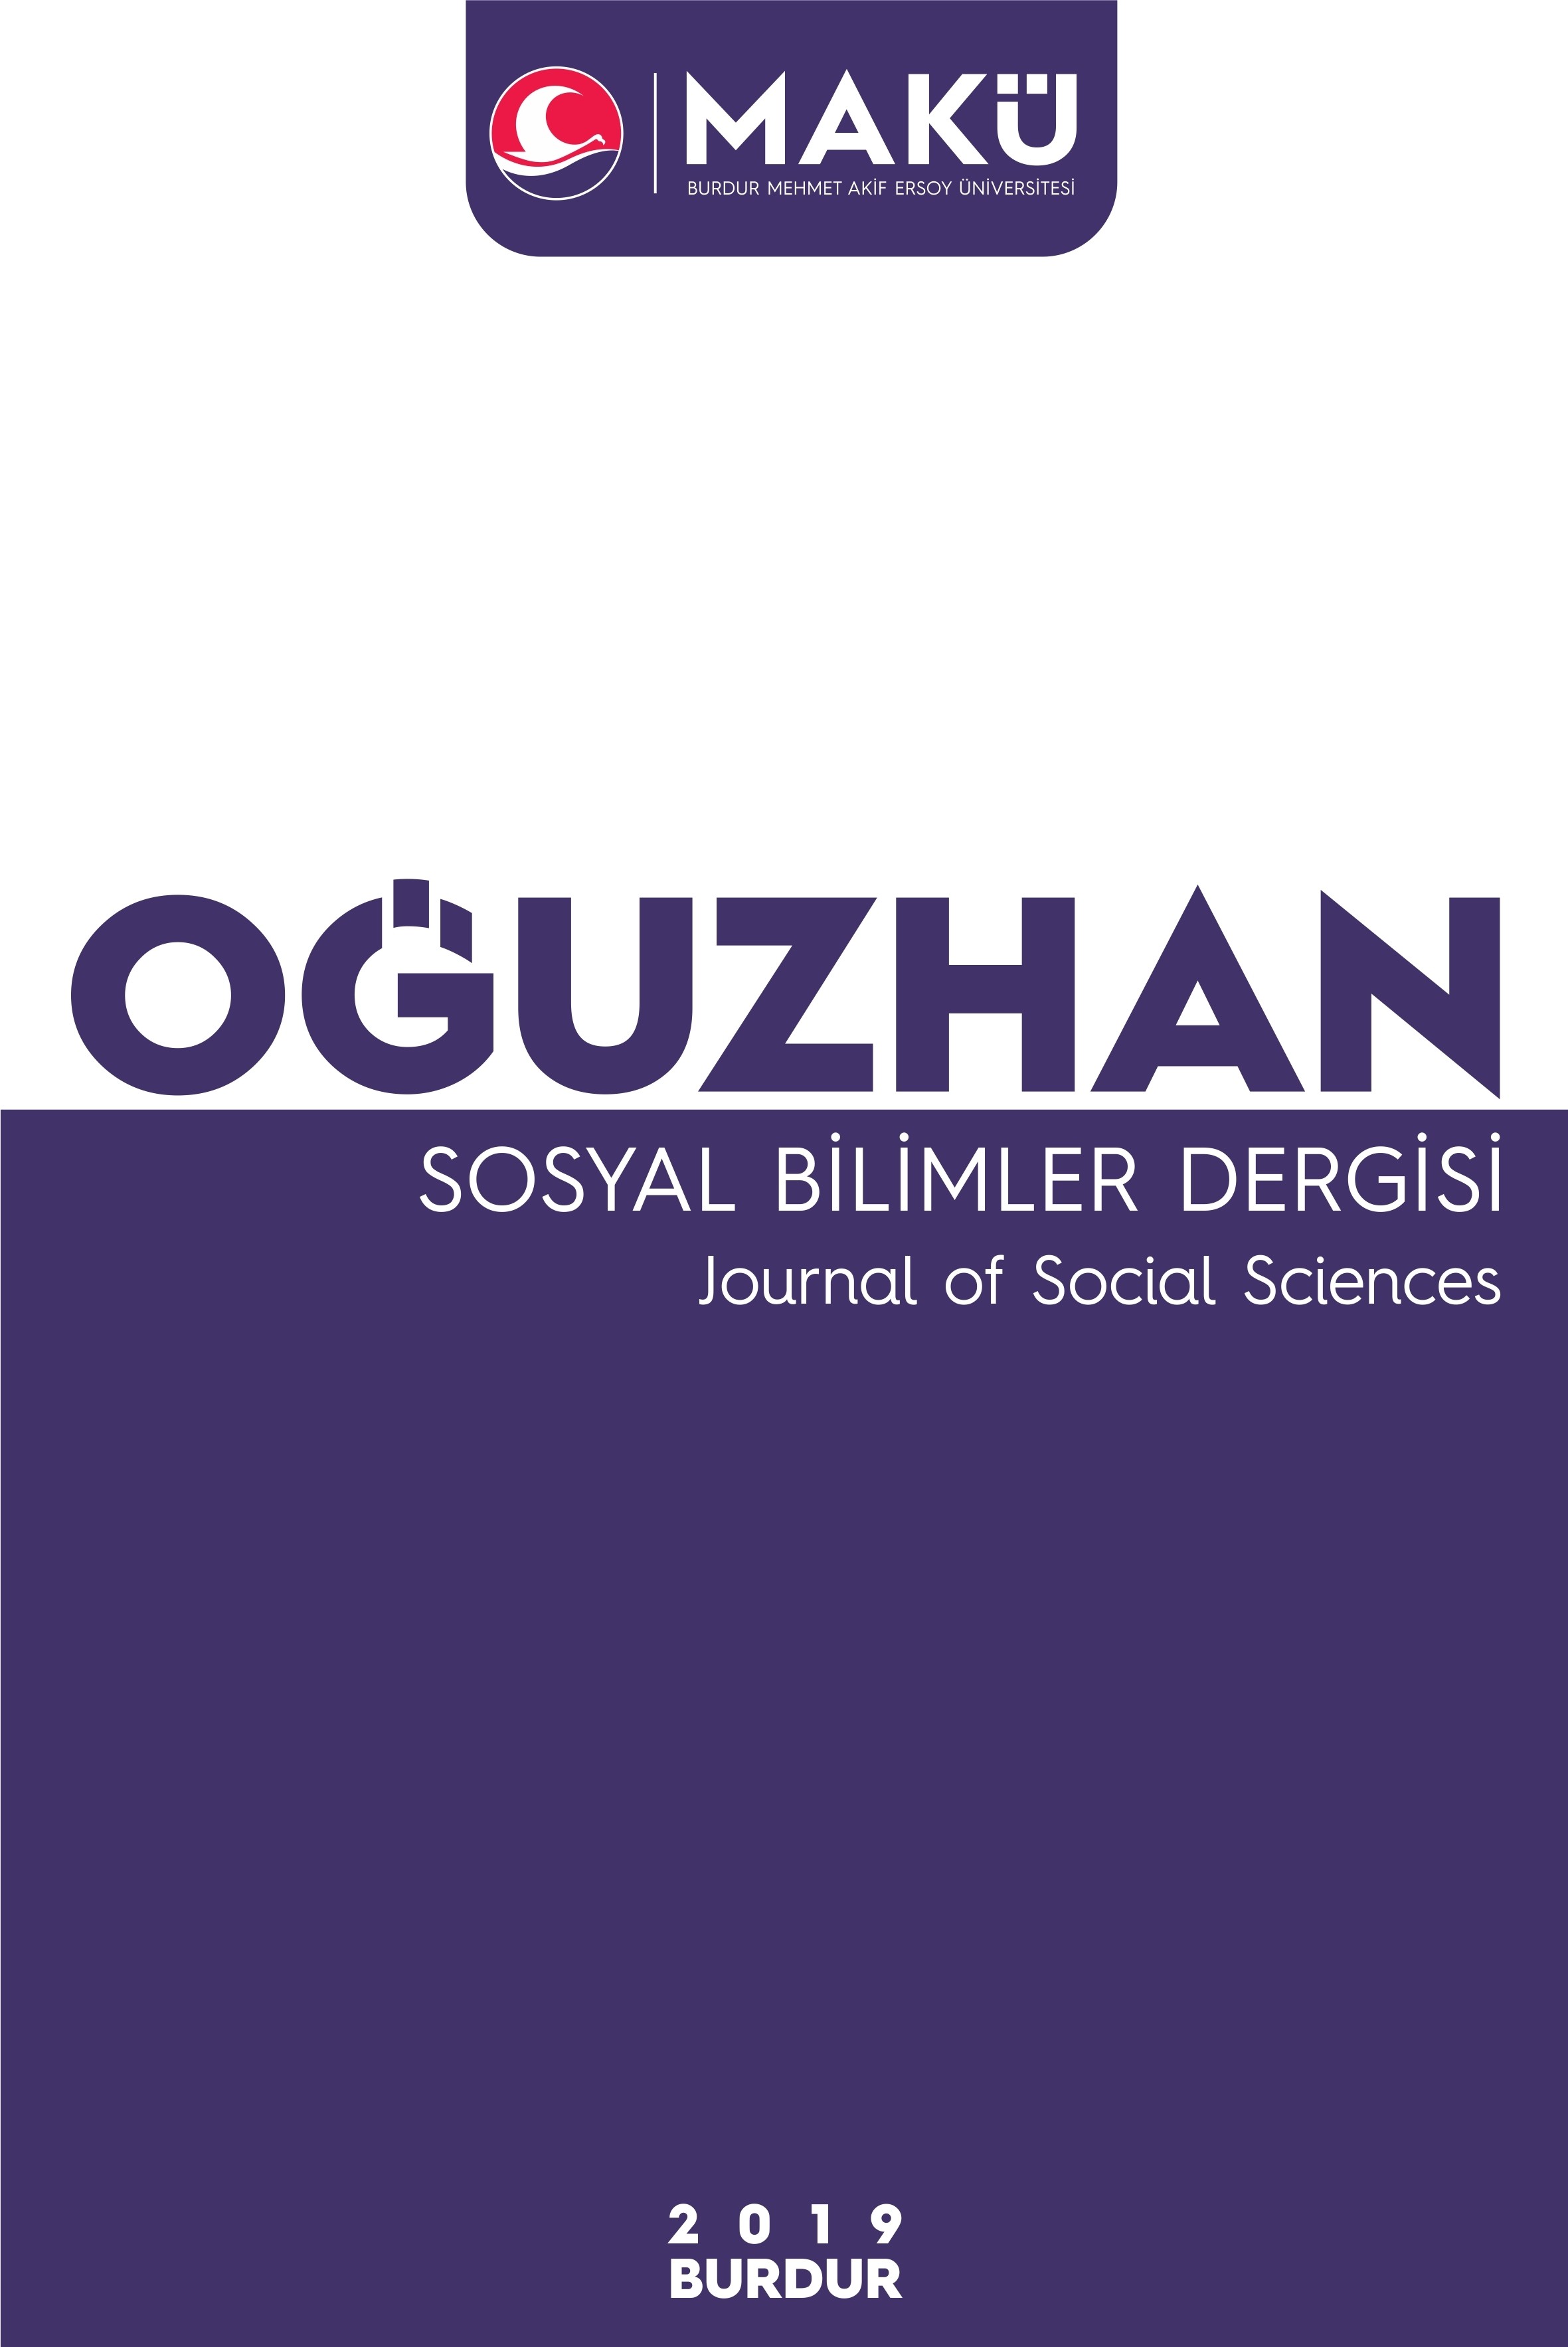 Oğuzhan Sosyal Bilimler Dergisi-Cover